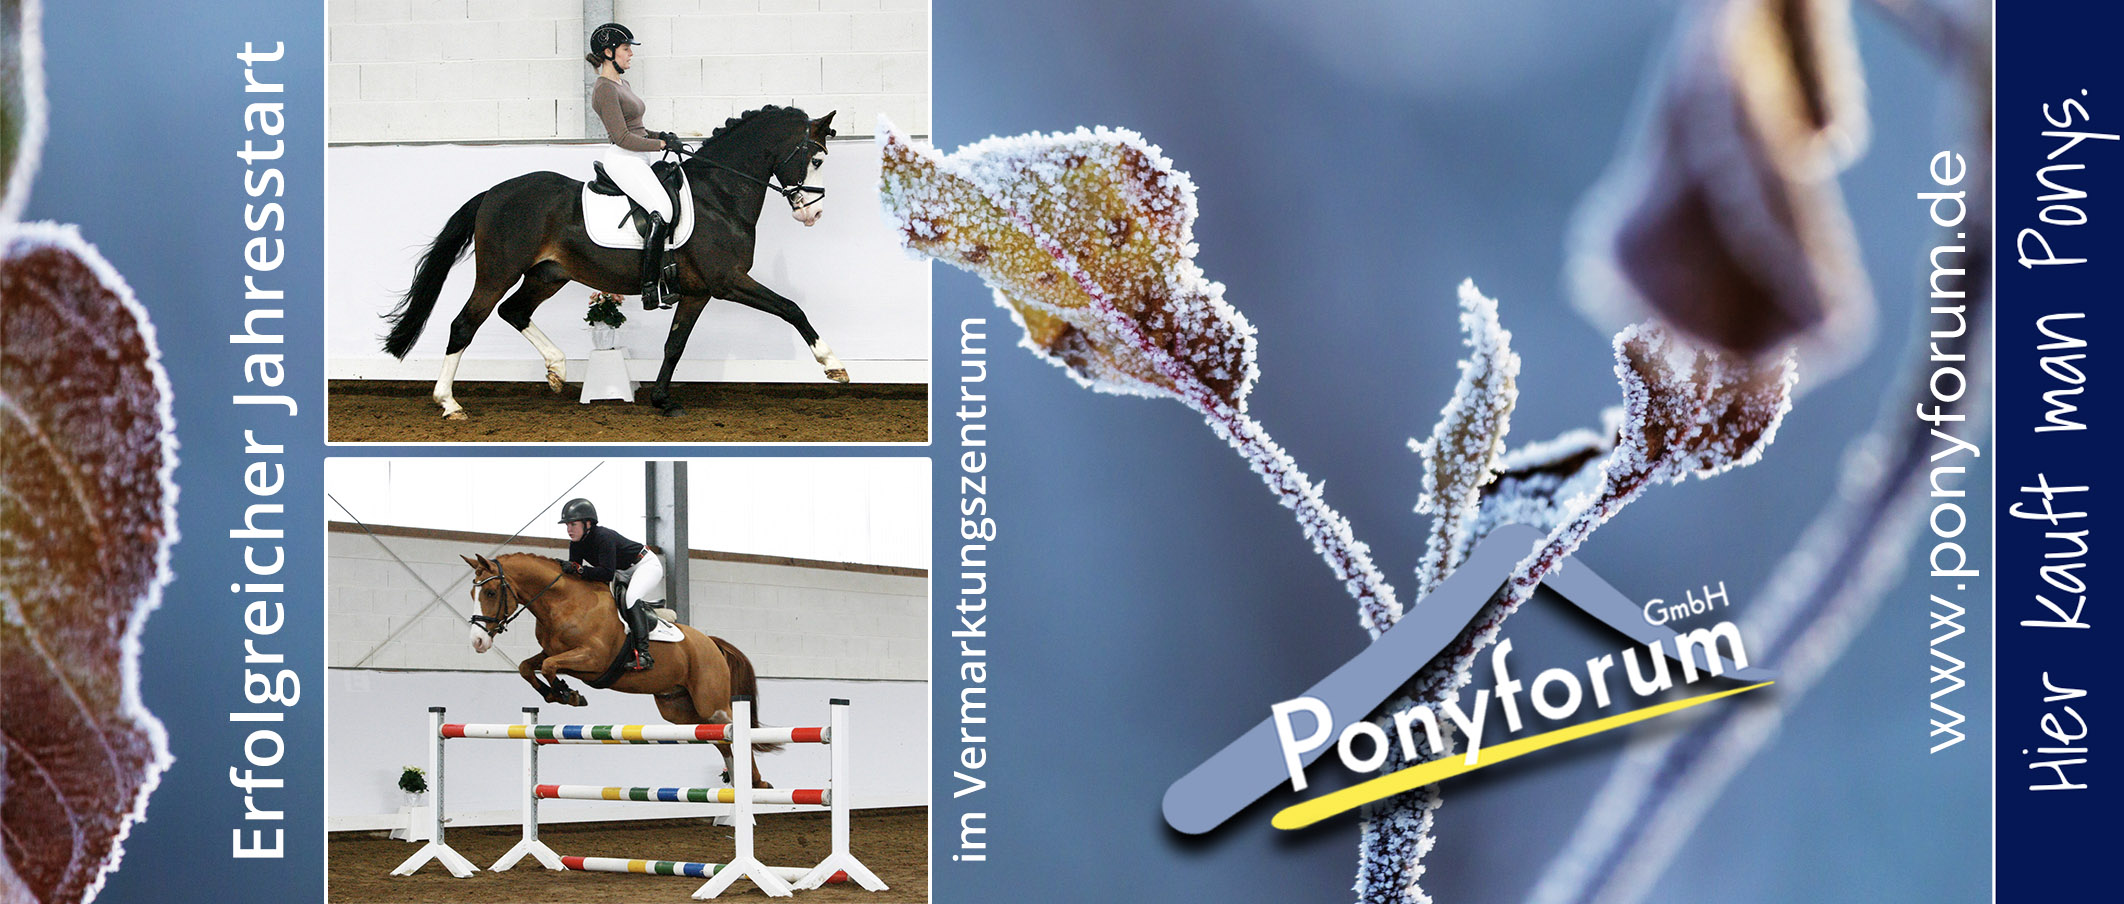 Ponyforum GmbH: Erfolgreicher Jahresbeginn im Vermarktungszentrum